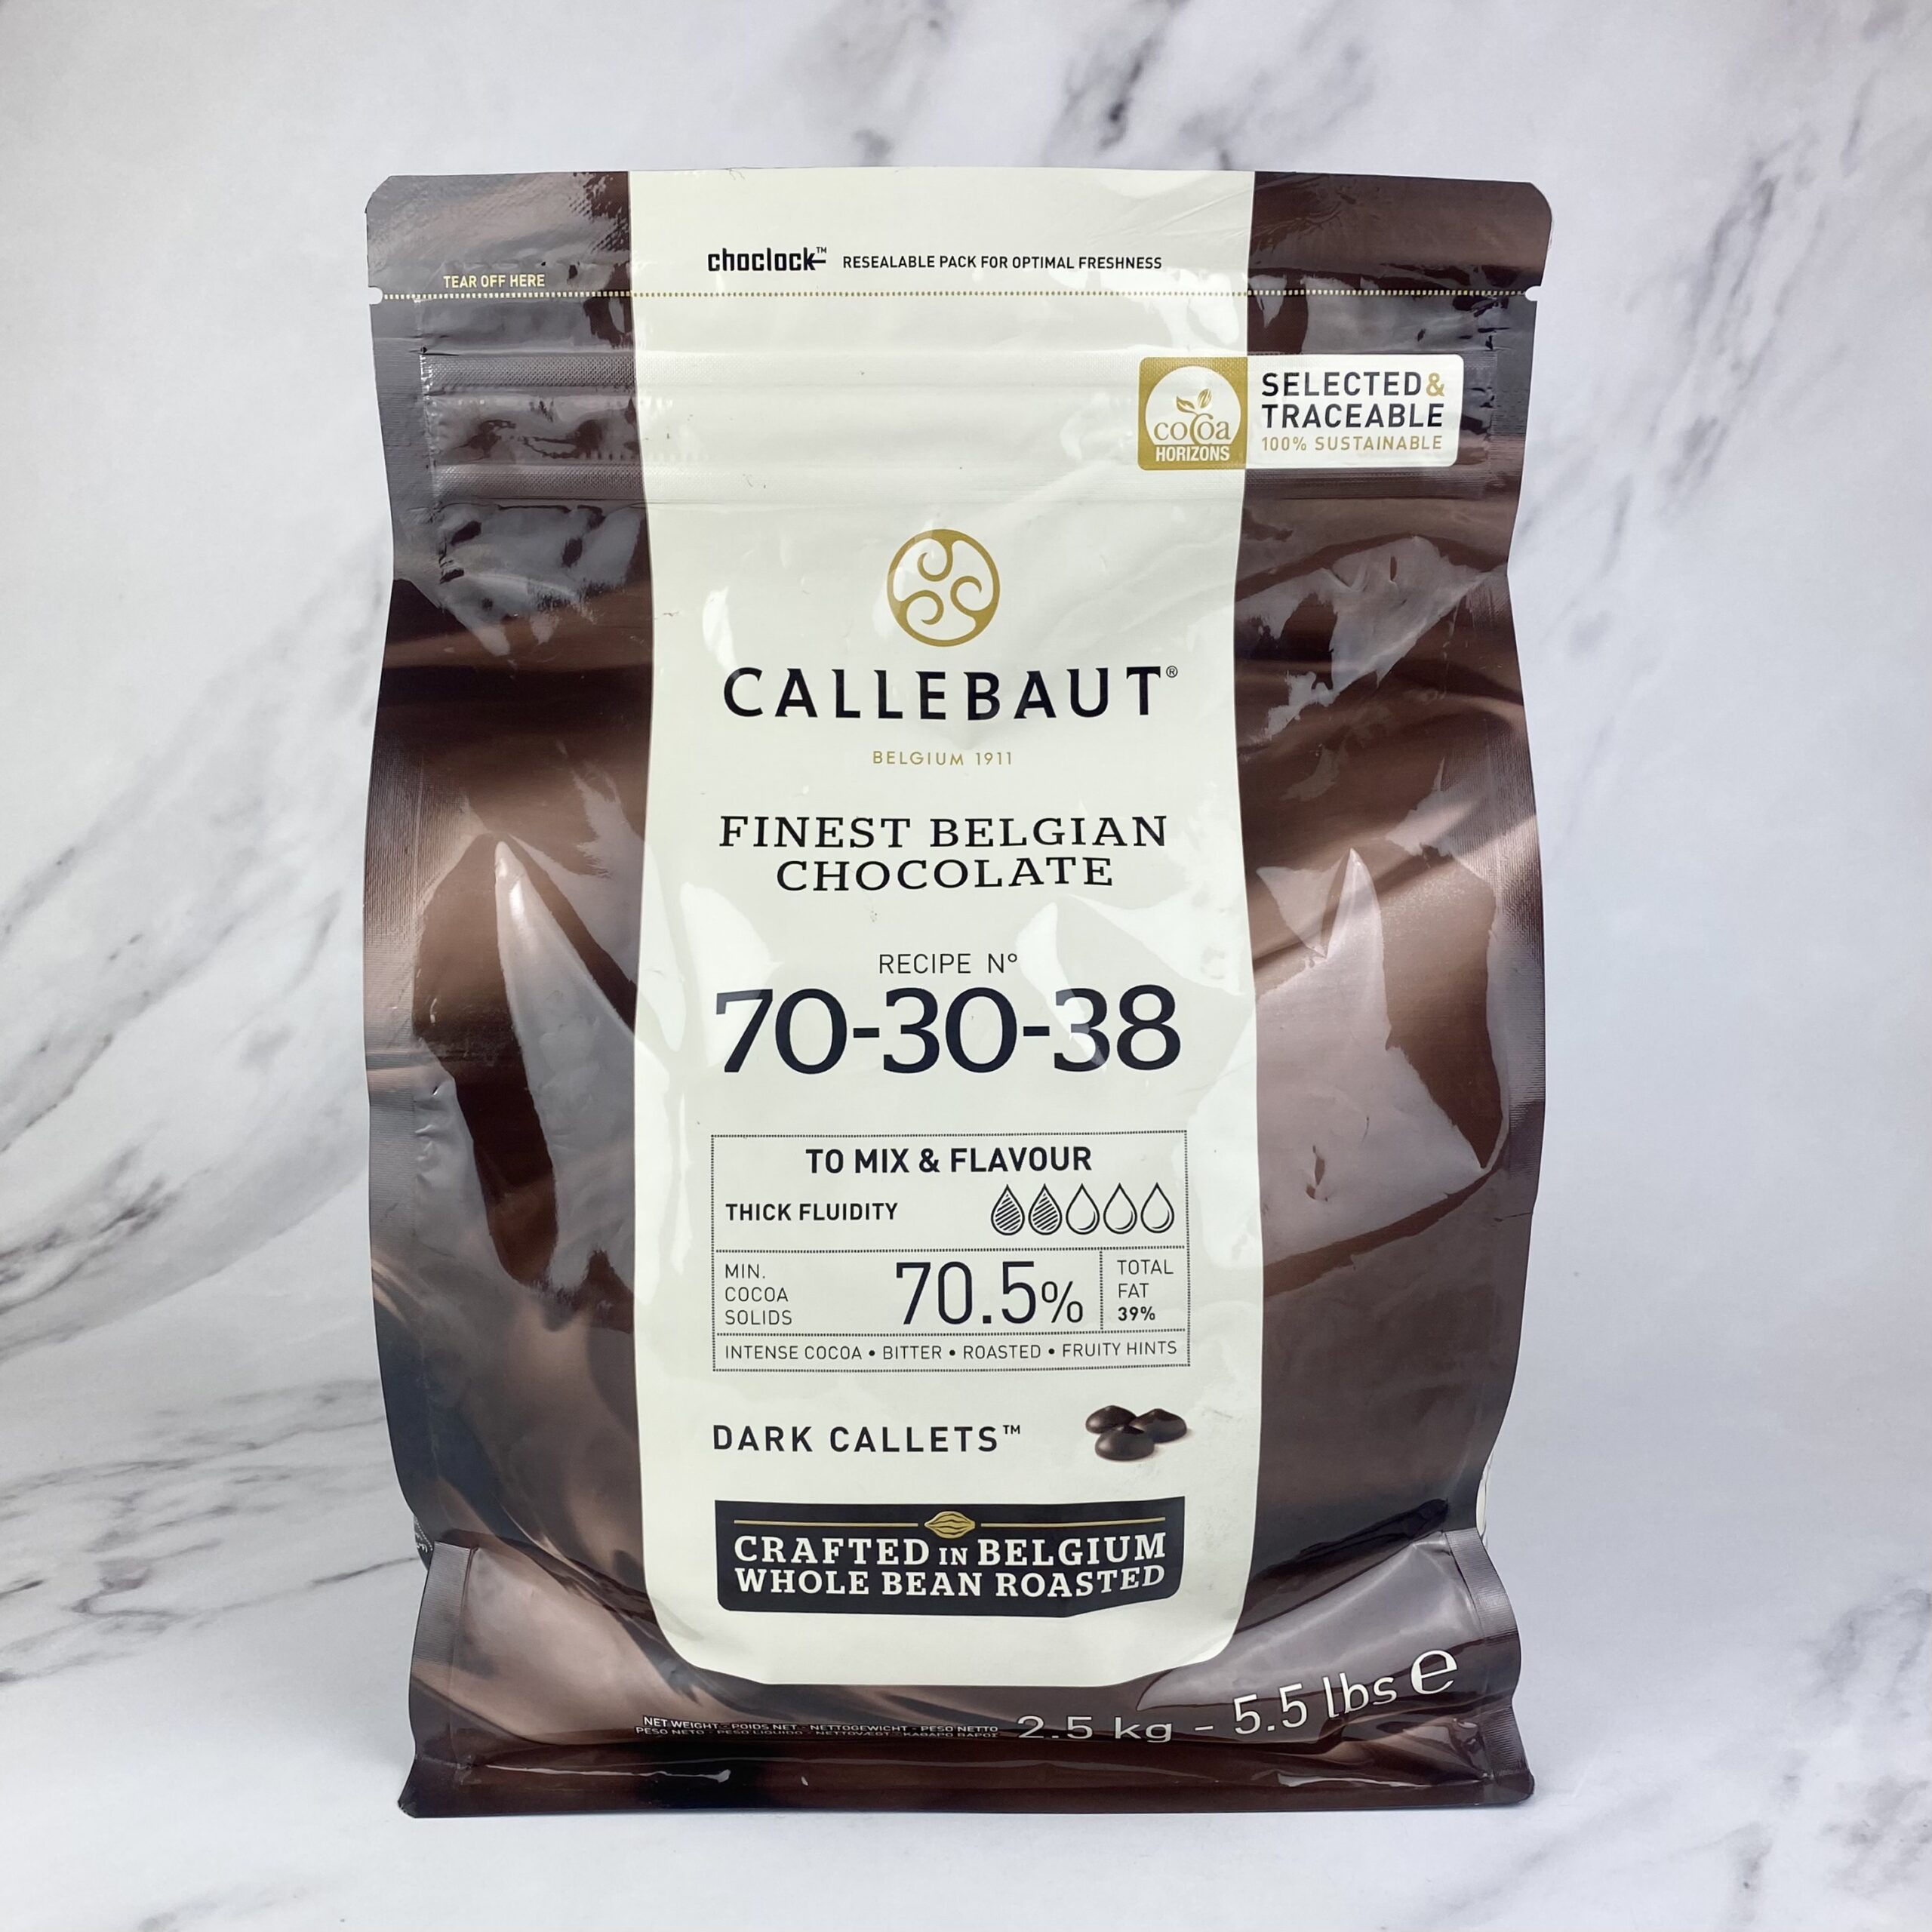 Callebaut Extra Bitter Dark Chocolate Callets – 2.5kg